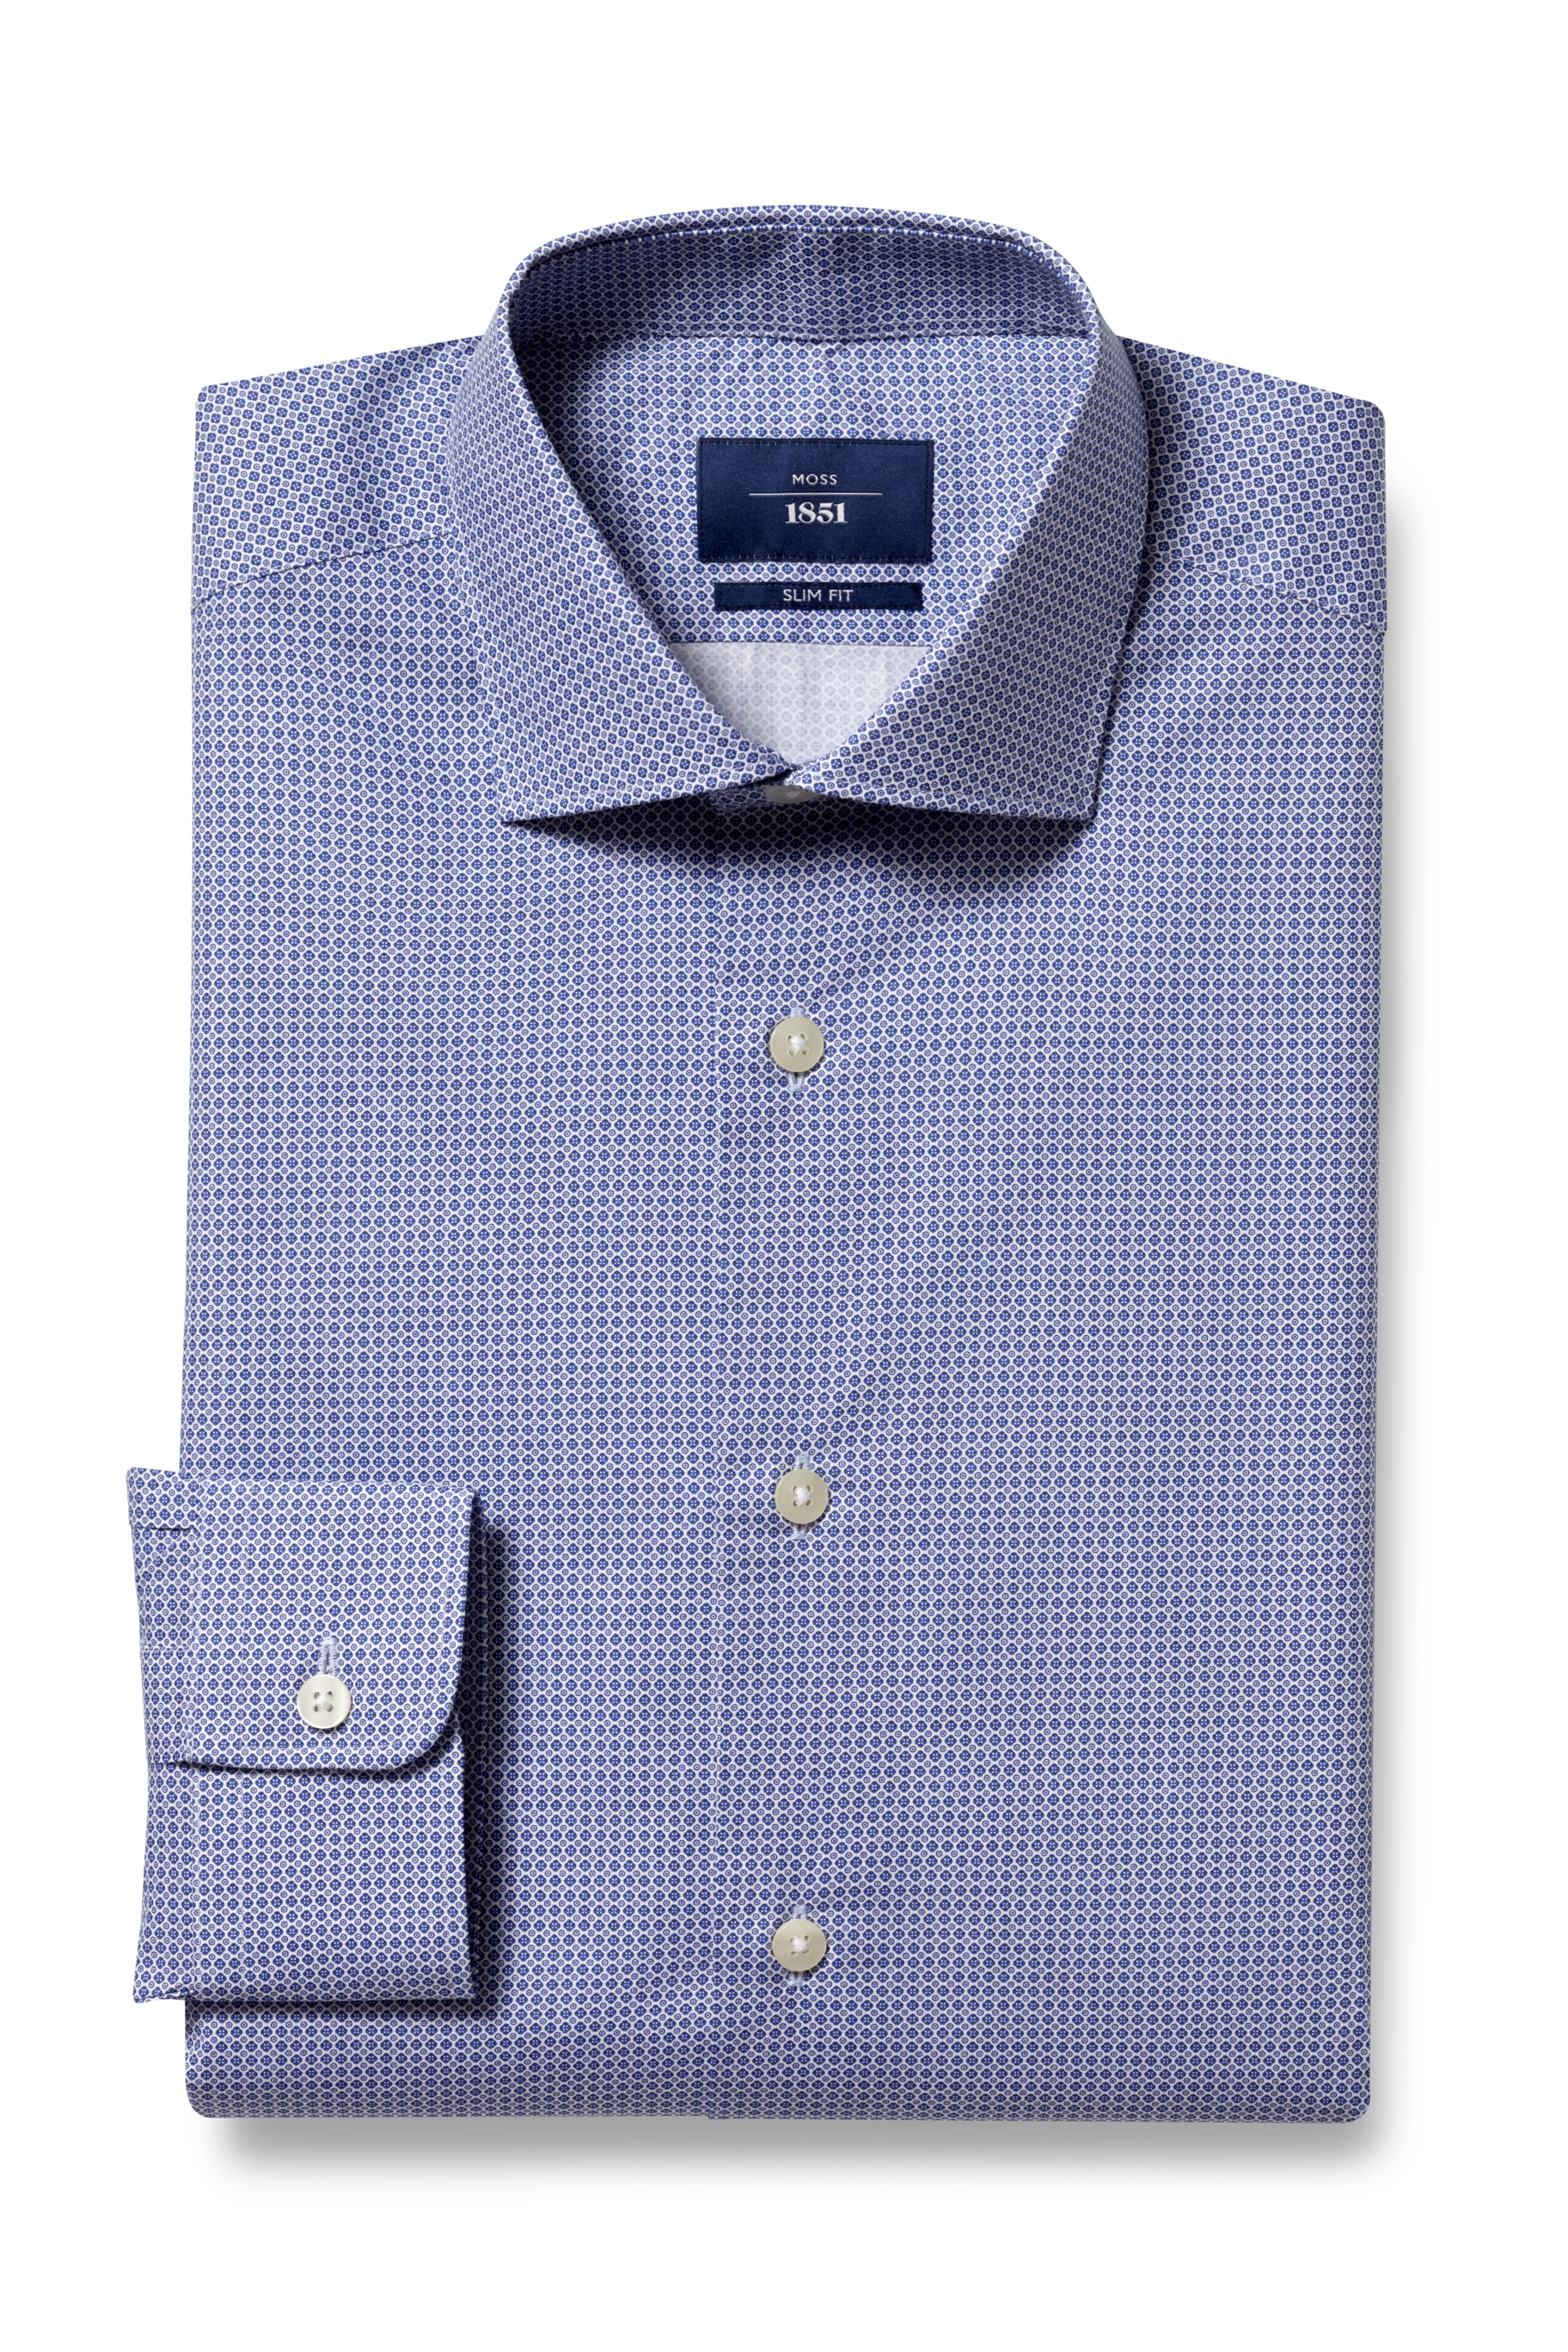 Moss 1851 Slim Fit Blue Single Cuff Print Shirt